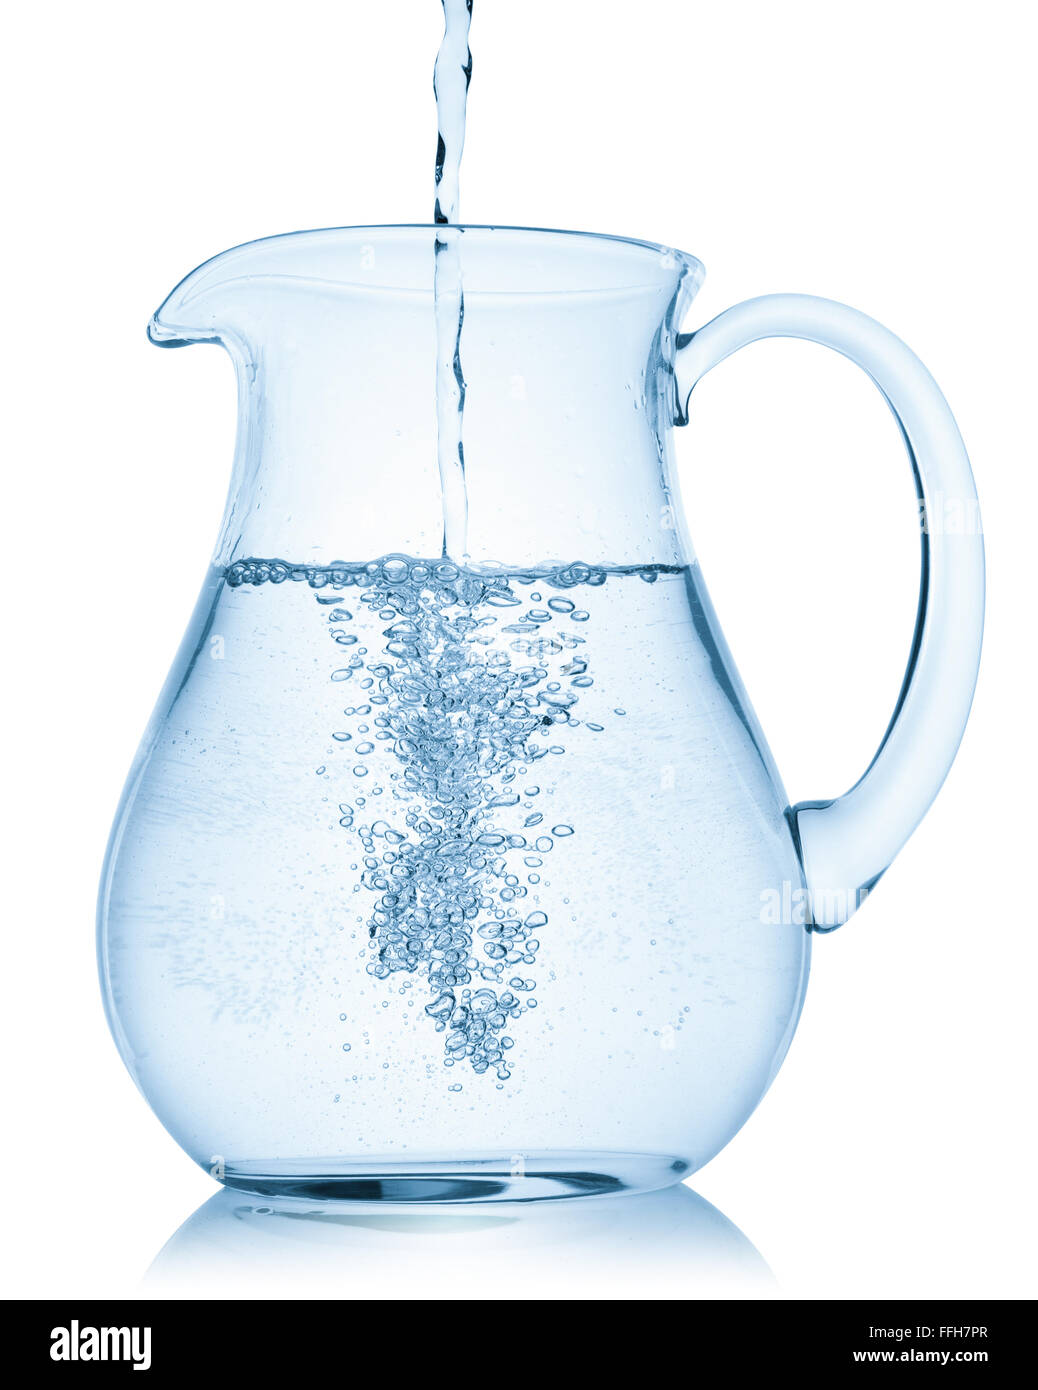 Verter agua en una jarra, aislado en el fondo blanco, trazado de